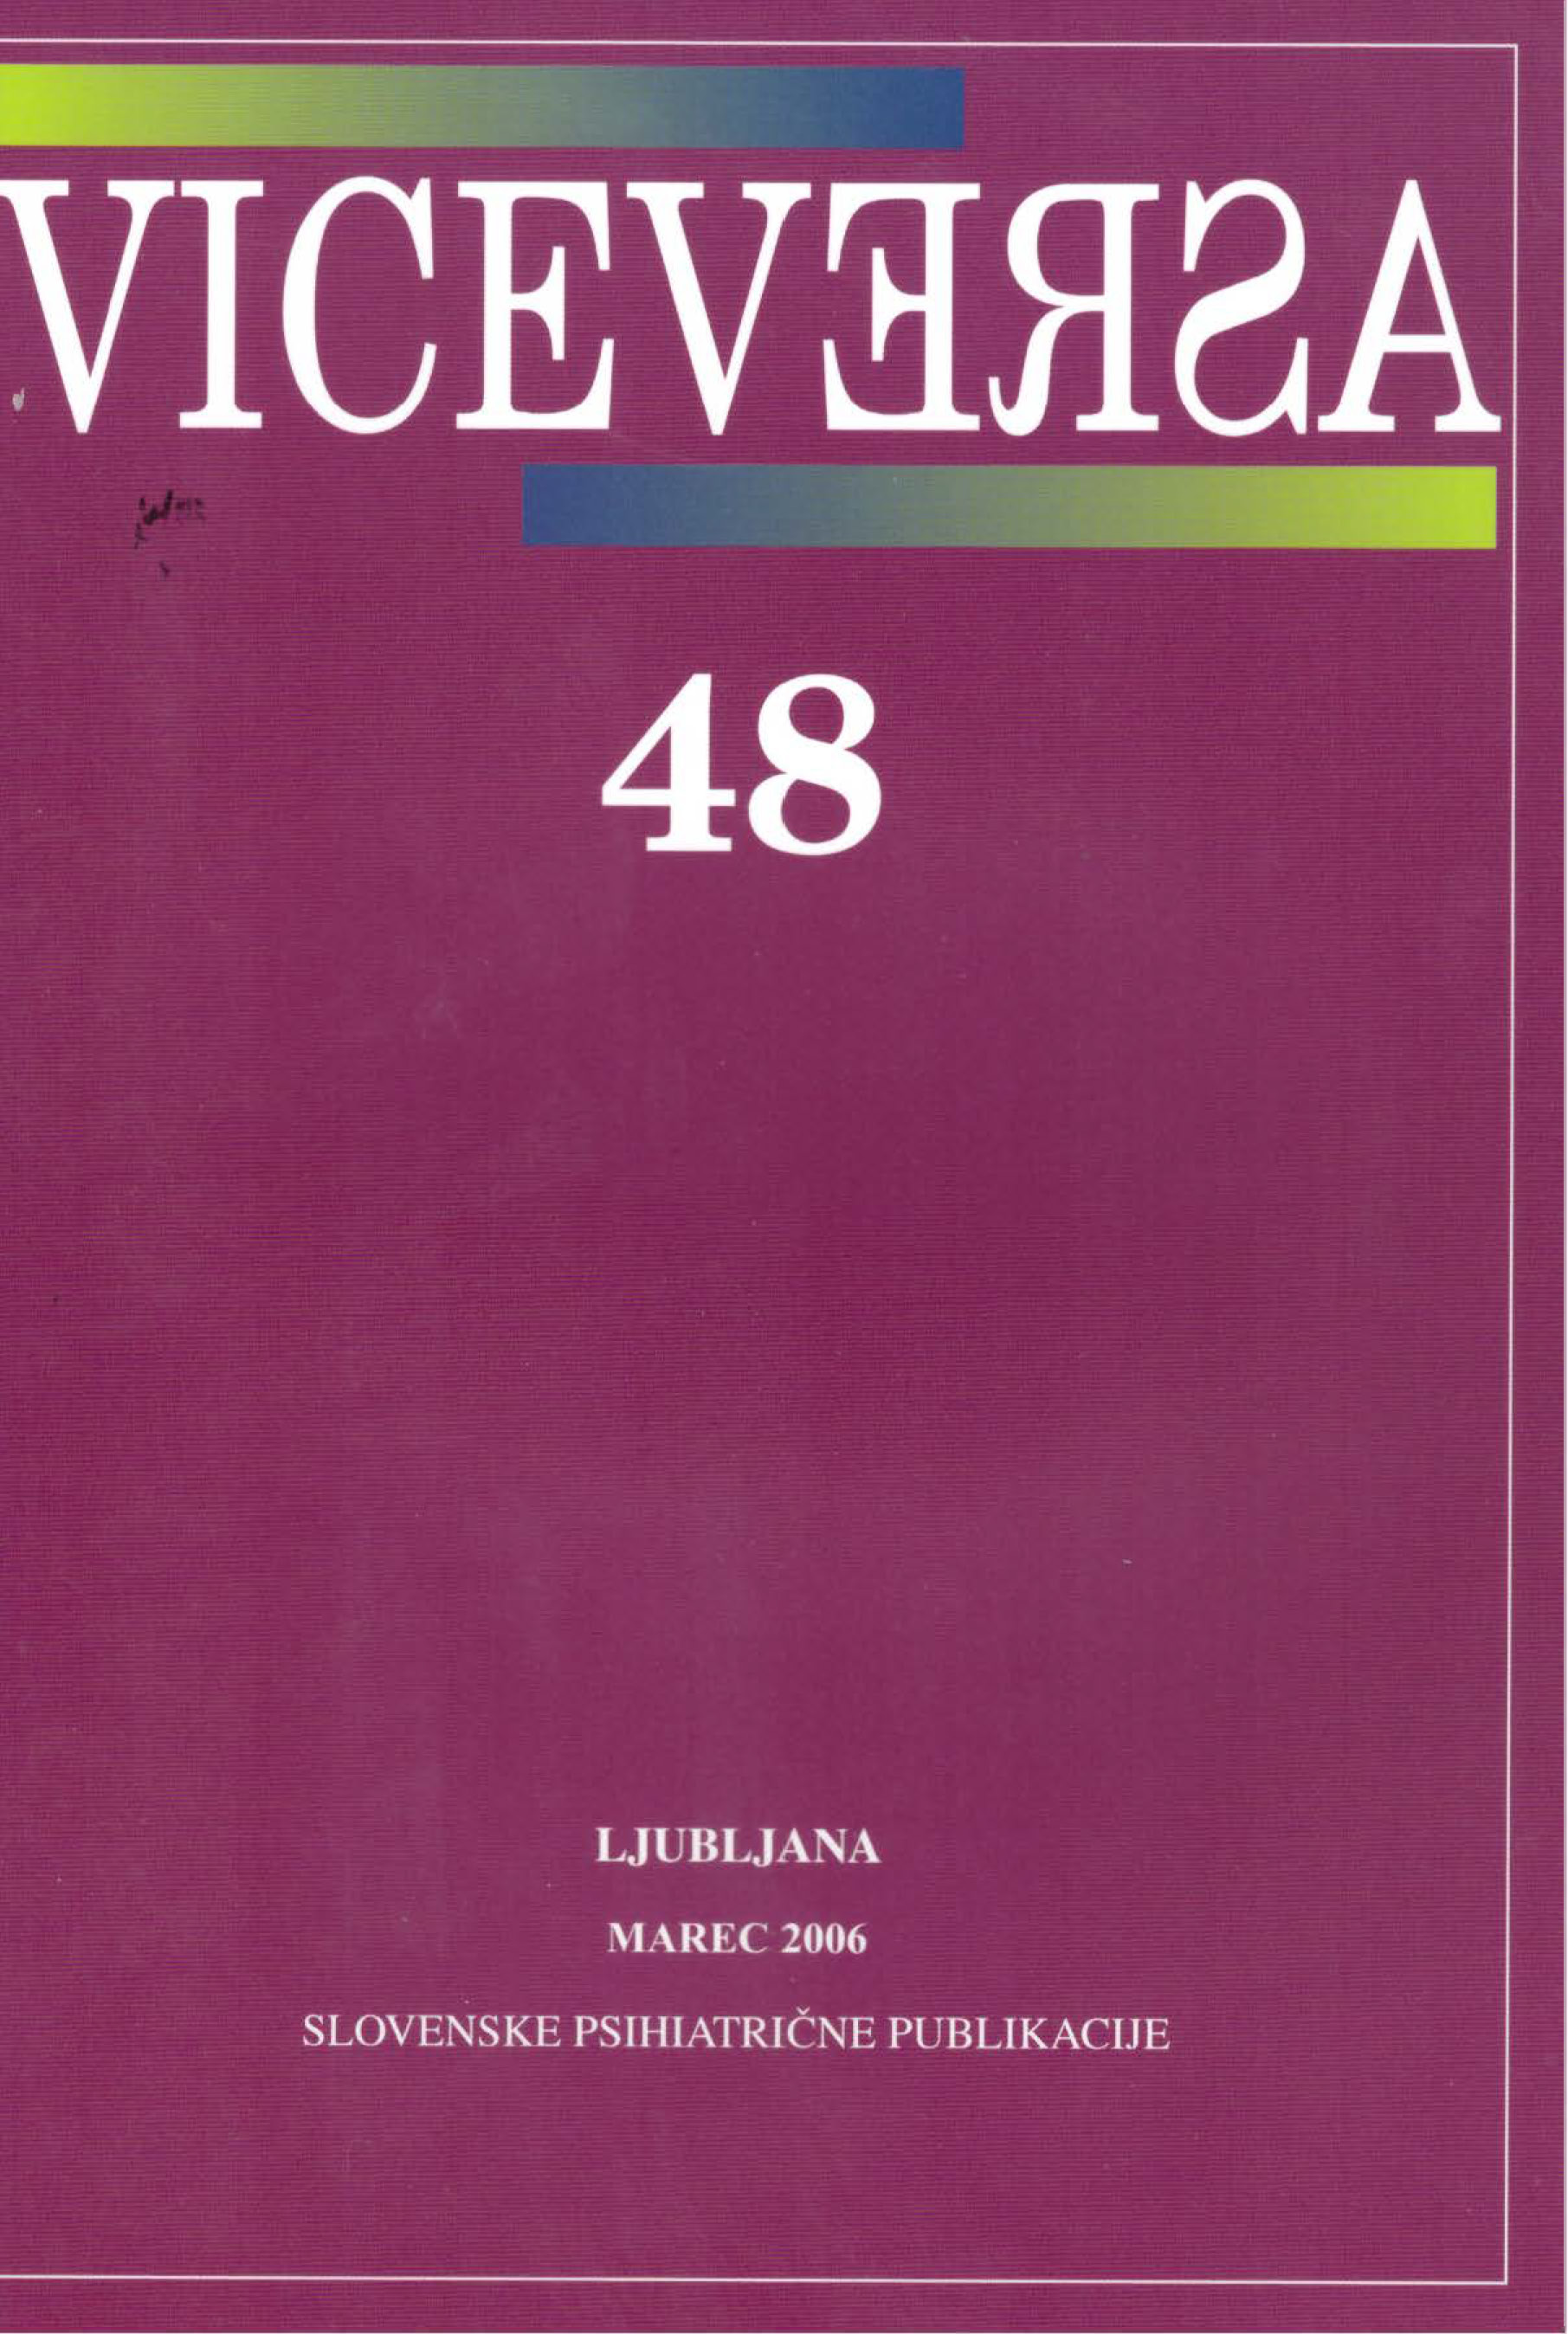 					Poglej Letn. 15 Št. 48 (2006): VICEVERSA
				